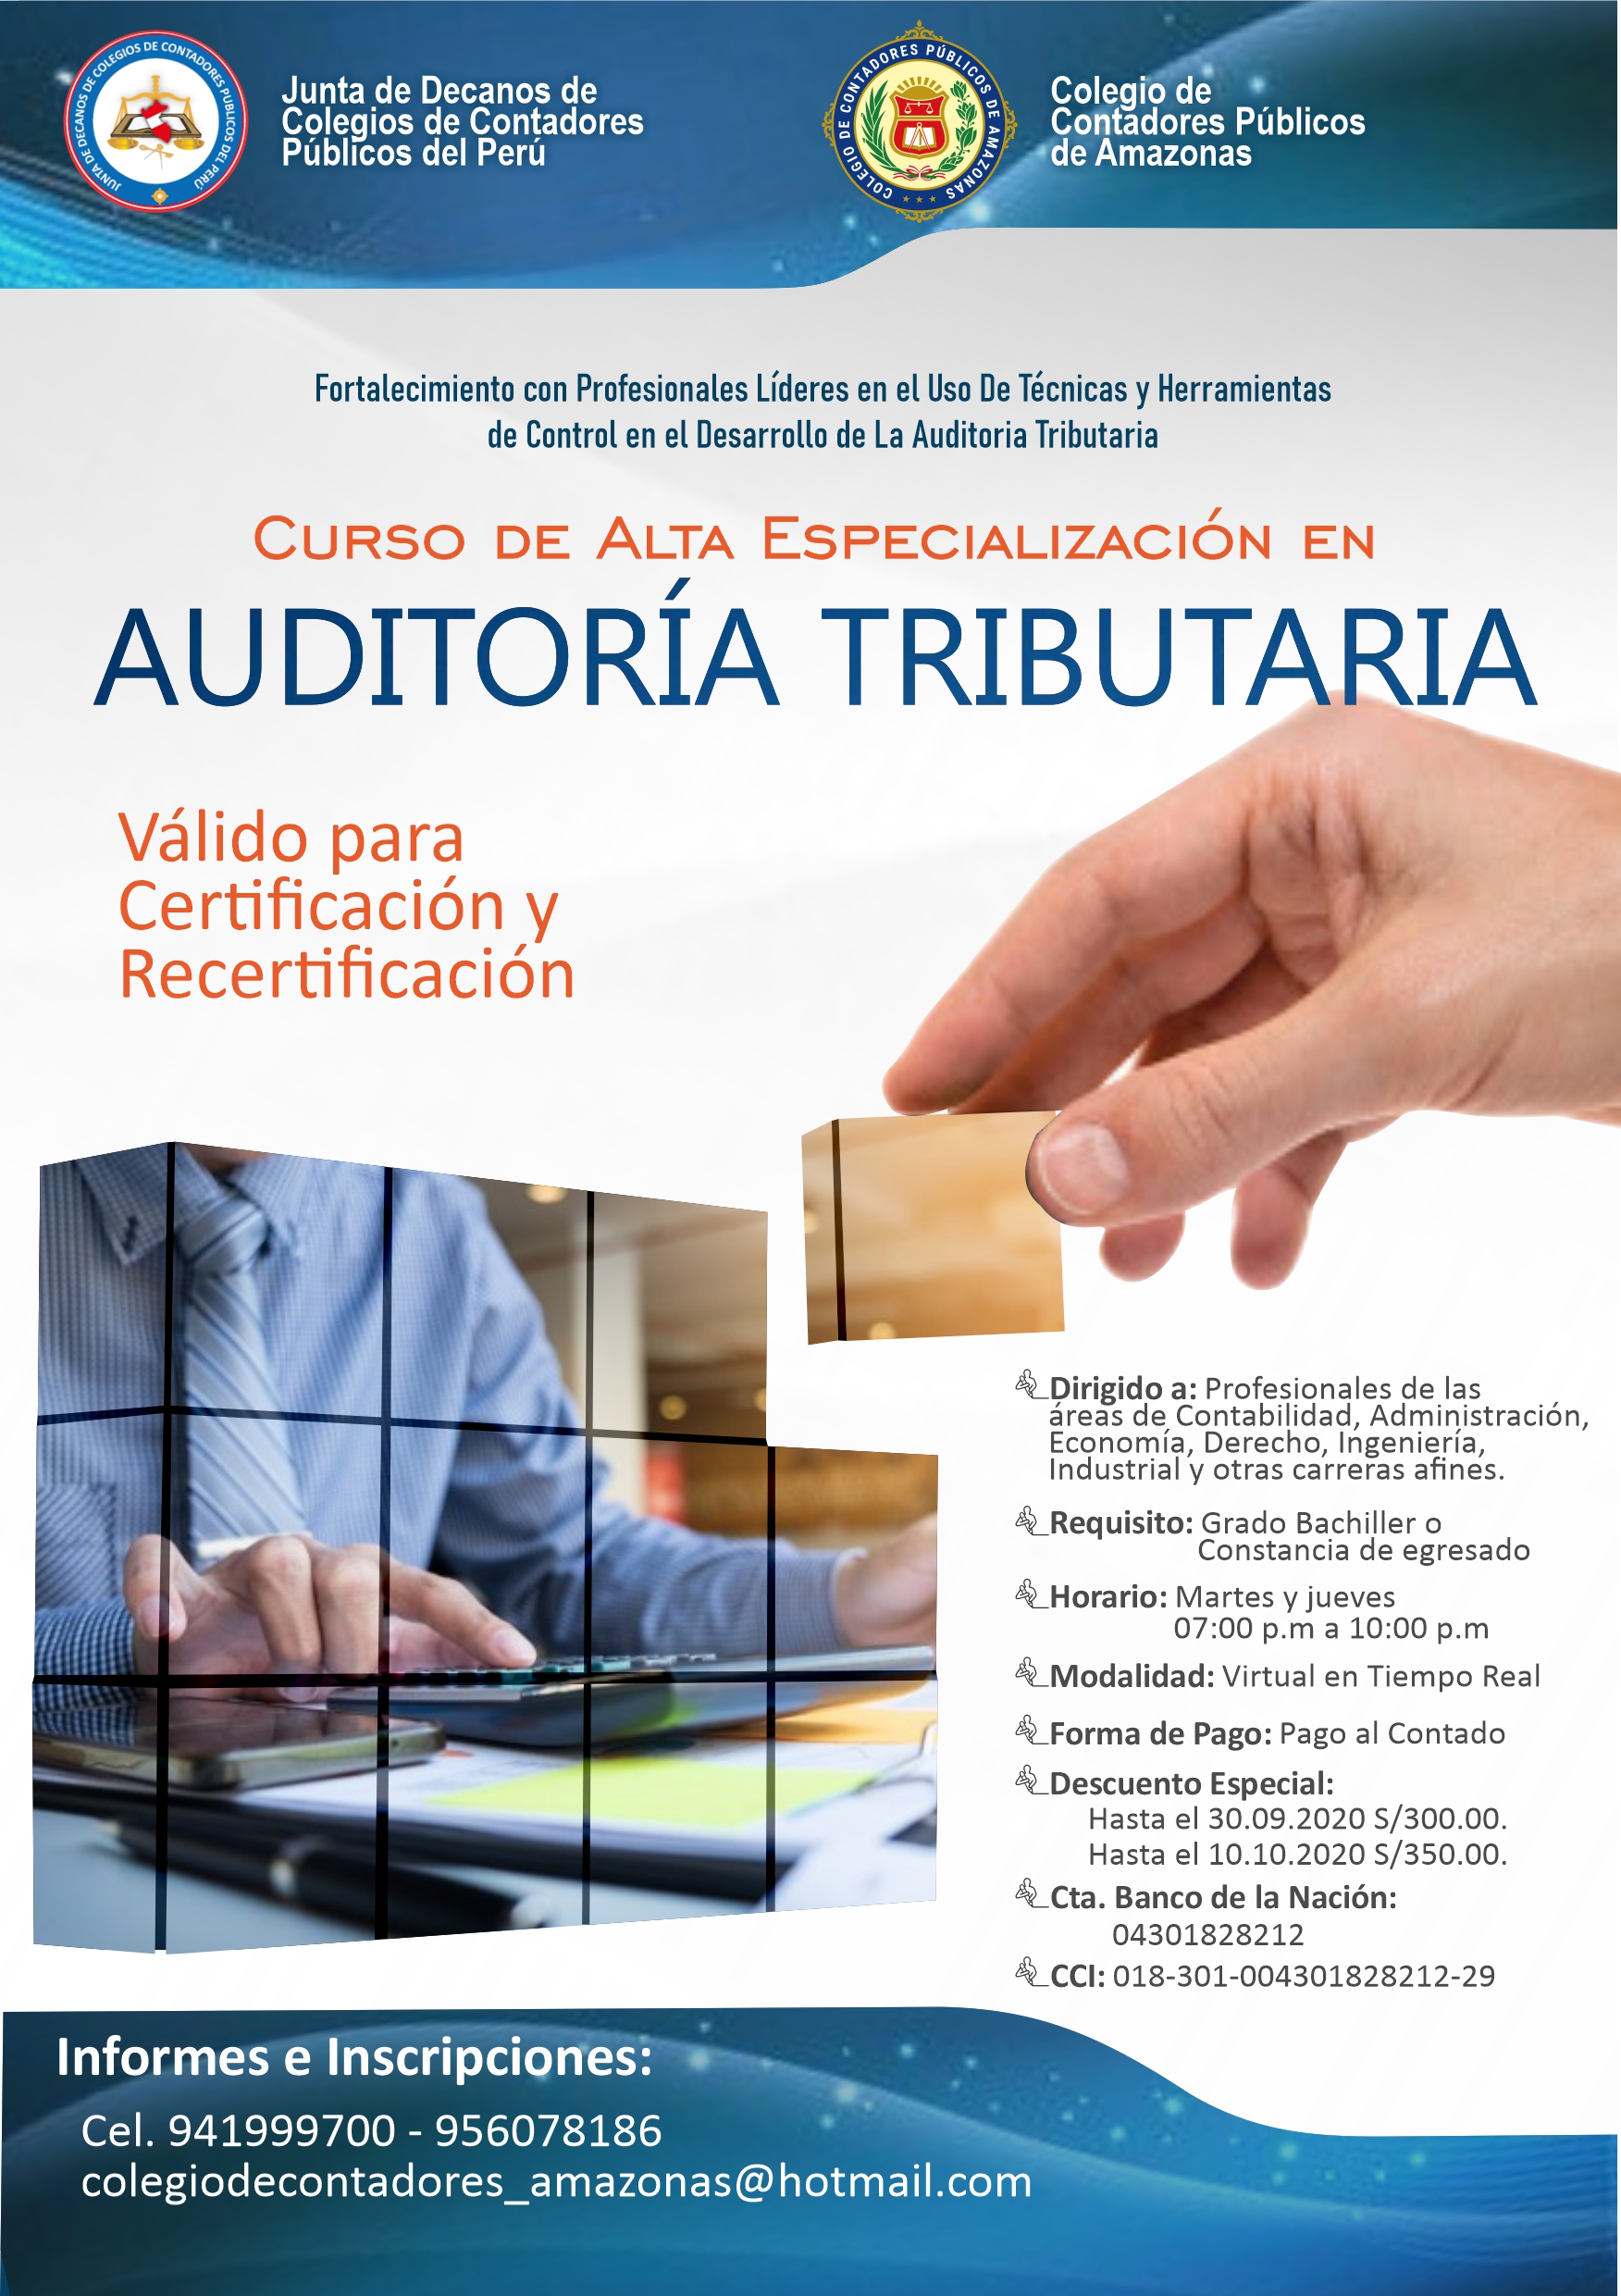 Thumbnail for the post titled: CURSO DE ALTA ESPECIALIZACIÓN EN AUDITORIA TRIBUTARIA